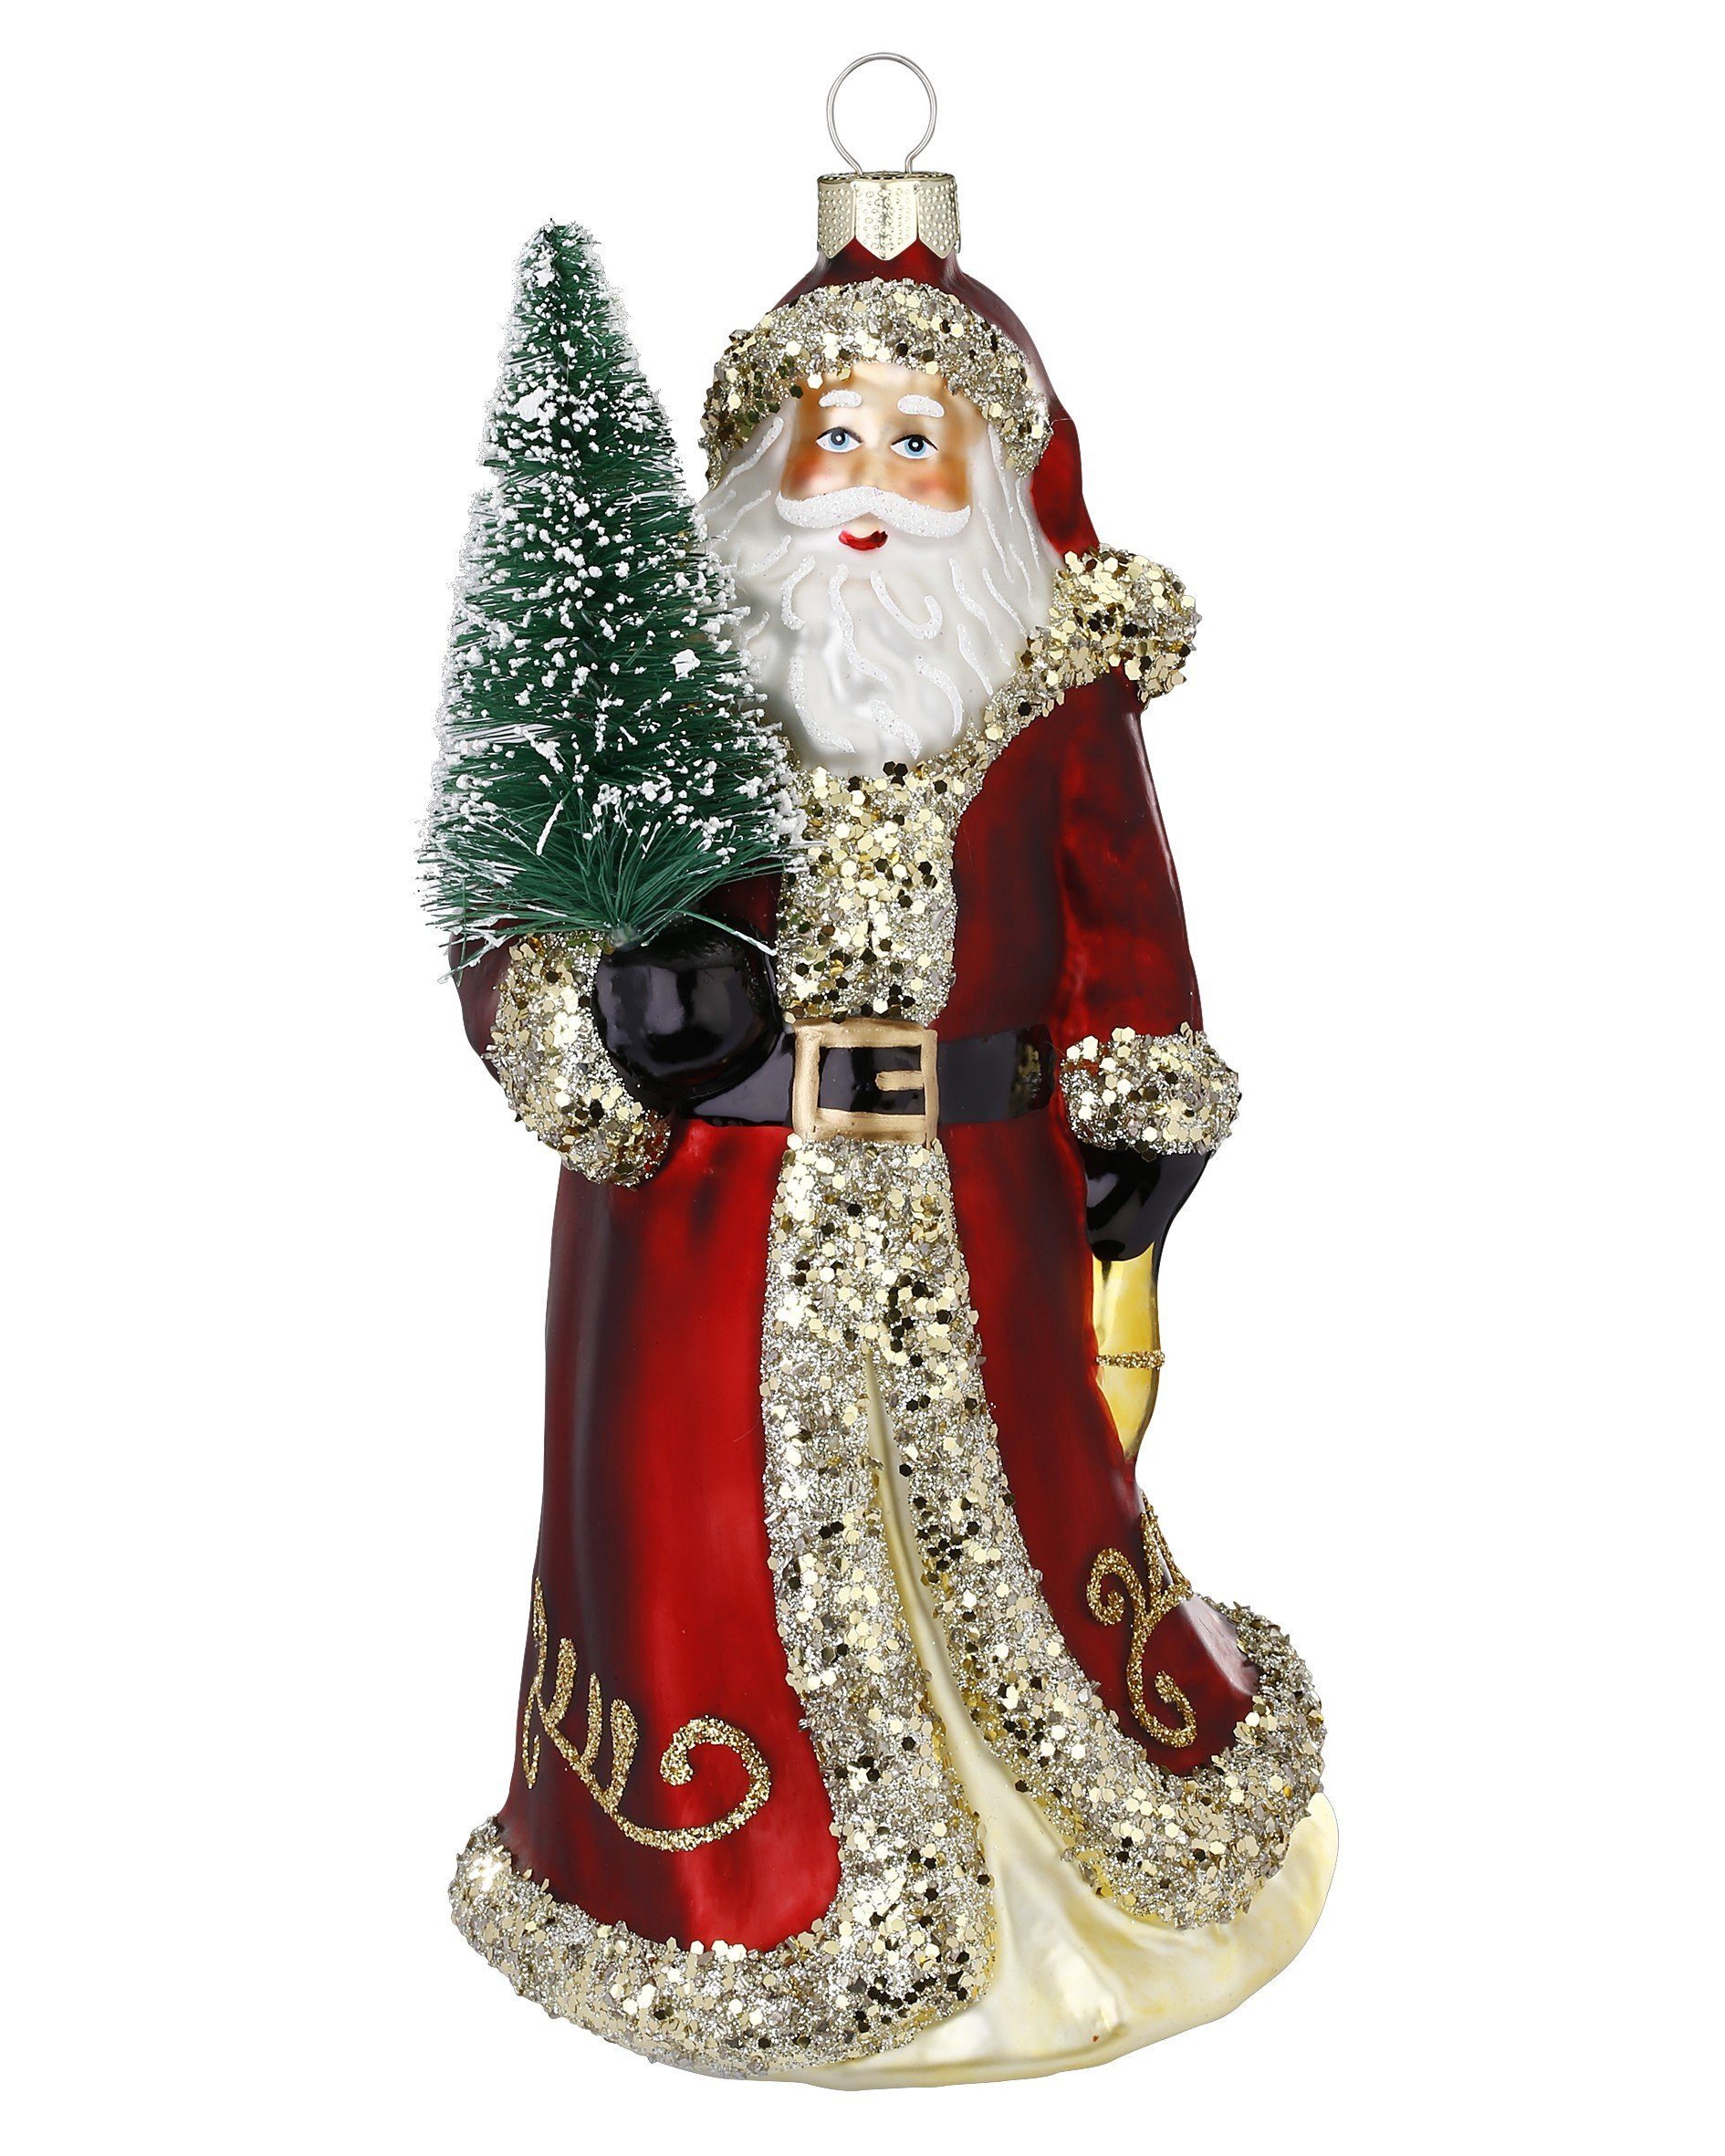 MAGIC by Inge Christbaumschmuck, Christbaumschmuck Glas Weihnachtsmann mit Tannenbaum 19cm rot